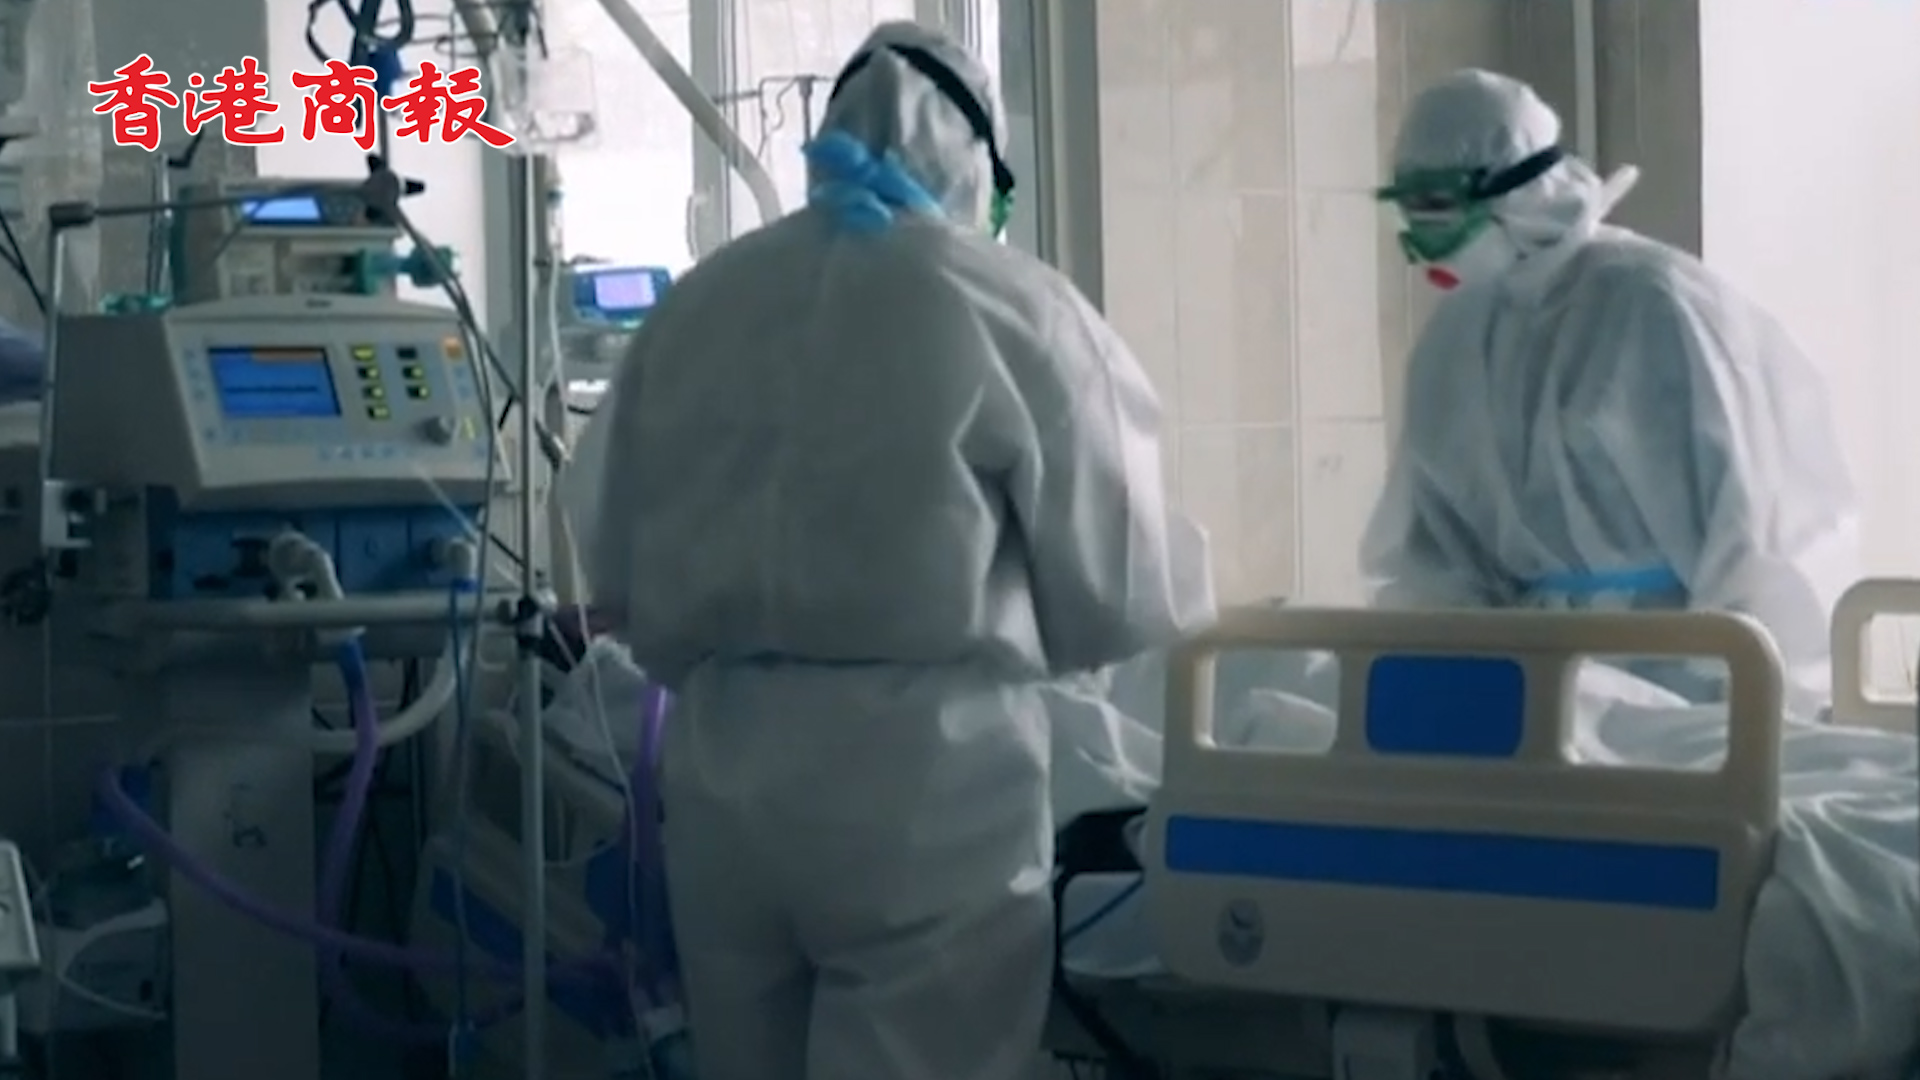 有片丨日本疫情告急病床緊缺 近10萬新冠患者被迫在家療養